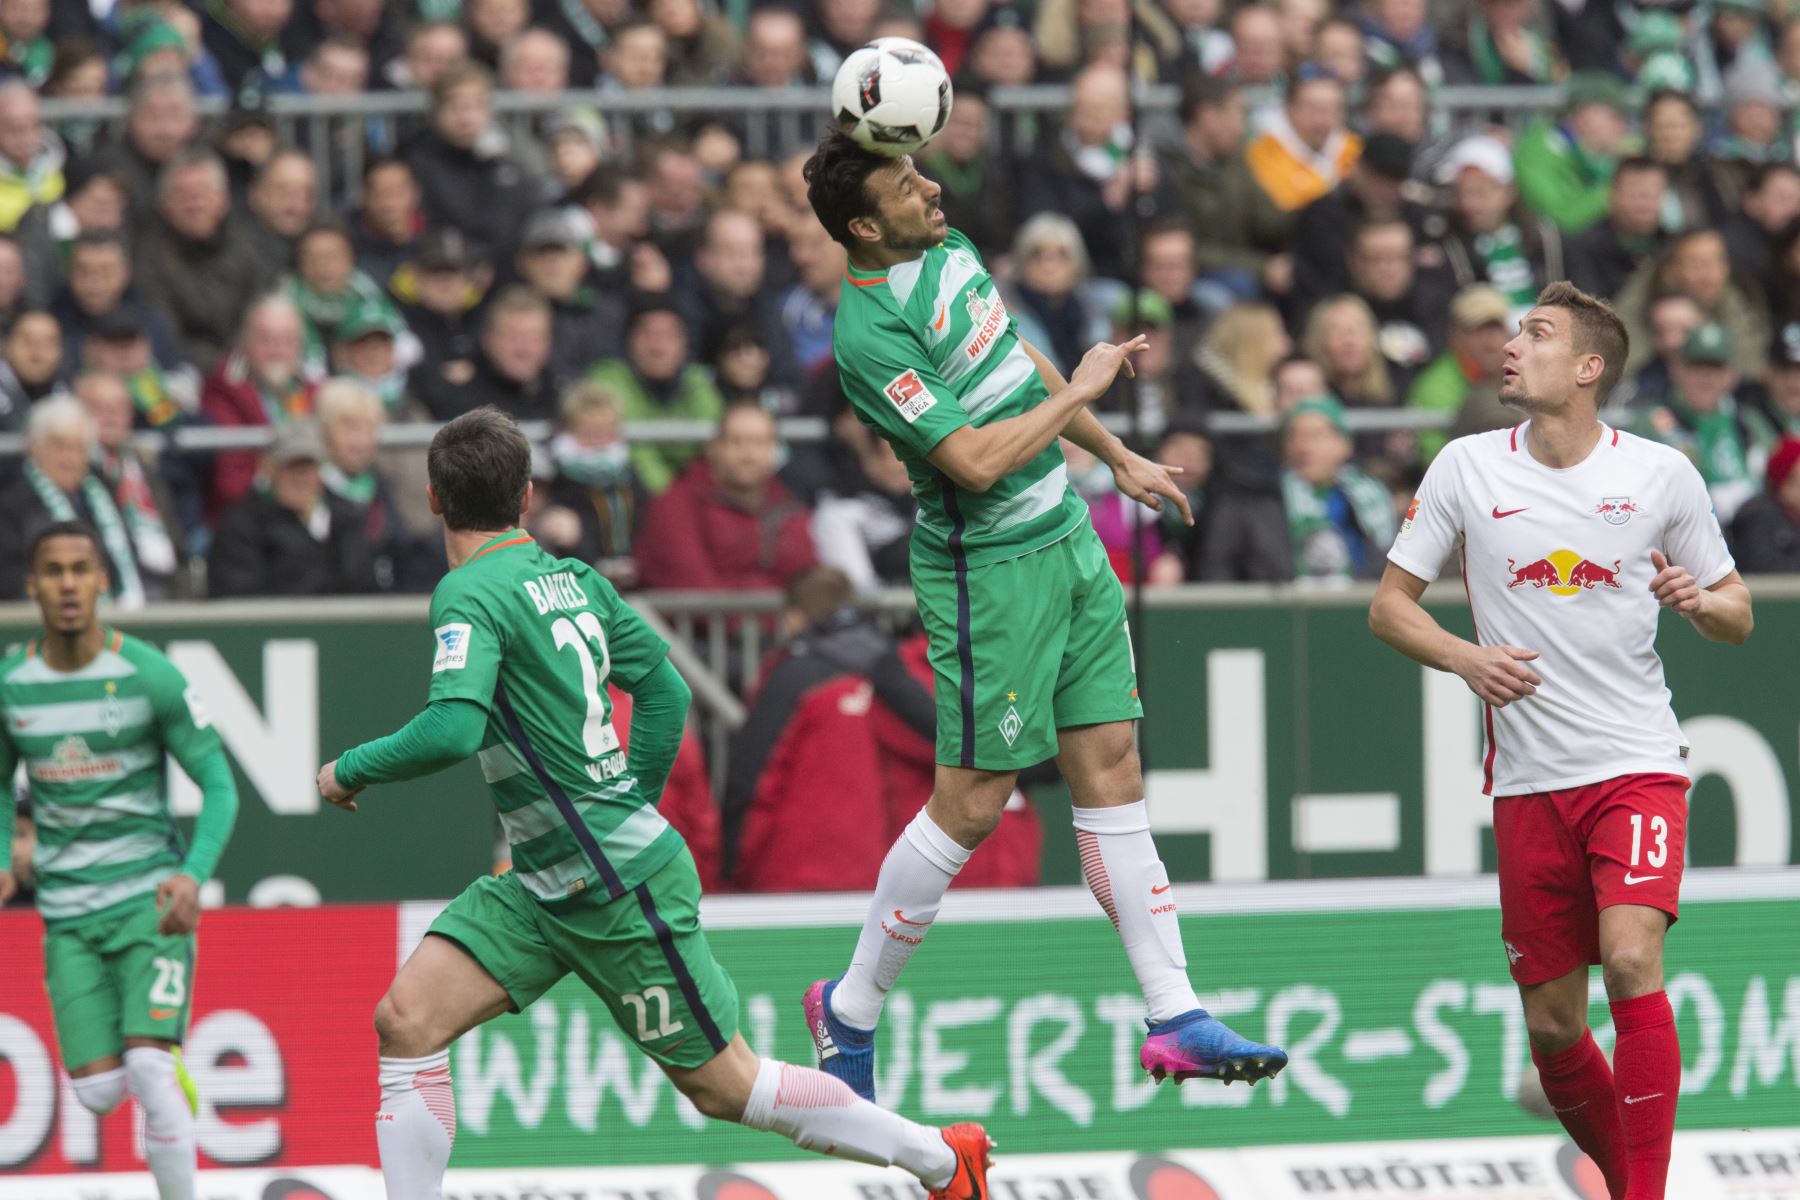 El delantero peruano de Bremen, Claudio Pizarro, encabeza la pelota durante el partido de fútbol alemán Werder Bremen de la Bundesliga de la primera división contra RB Leipzig en Bremen, Alemania septentrional, el 18 de marzo de 2017.
Foto:AFP